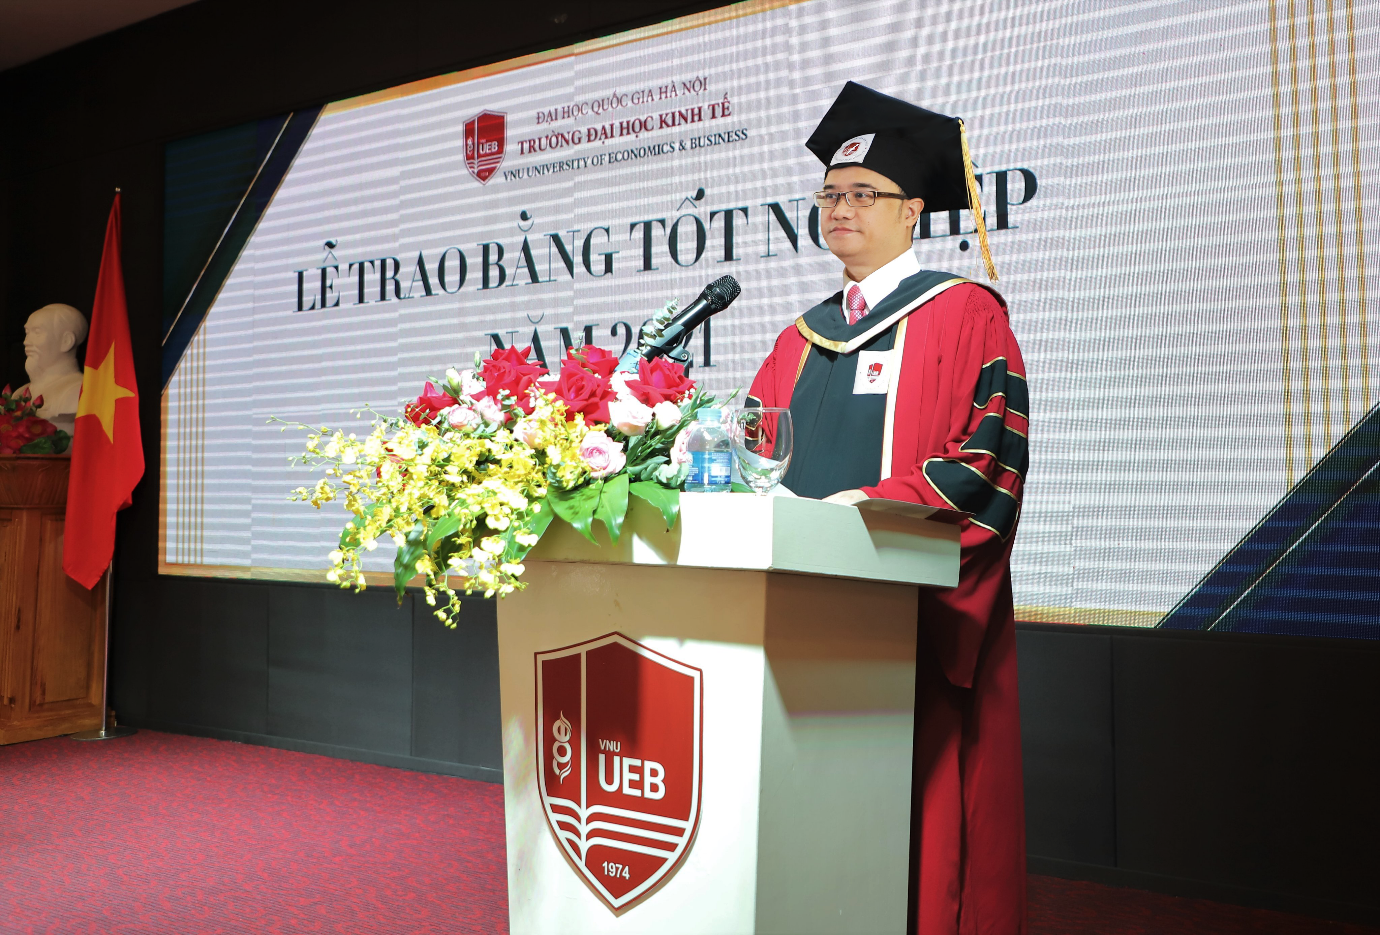 Trường ĐH Kinh tế - ĐHQG Hà Nội lần đầu trao bằng tốt nghiệp trực tuyến